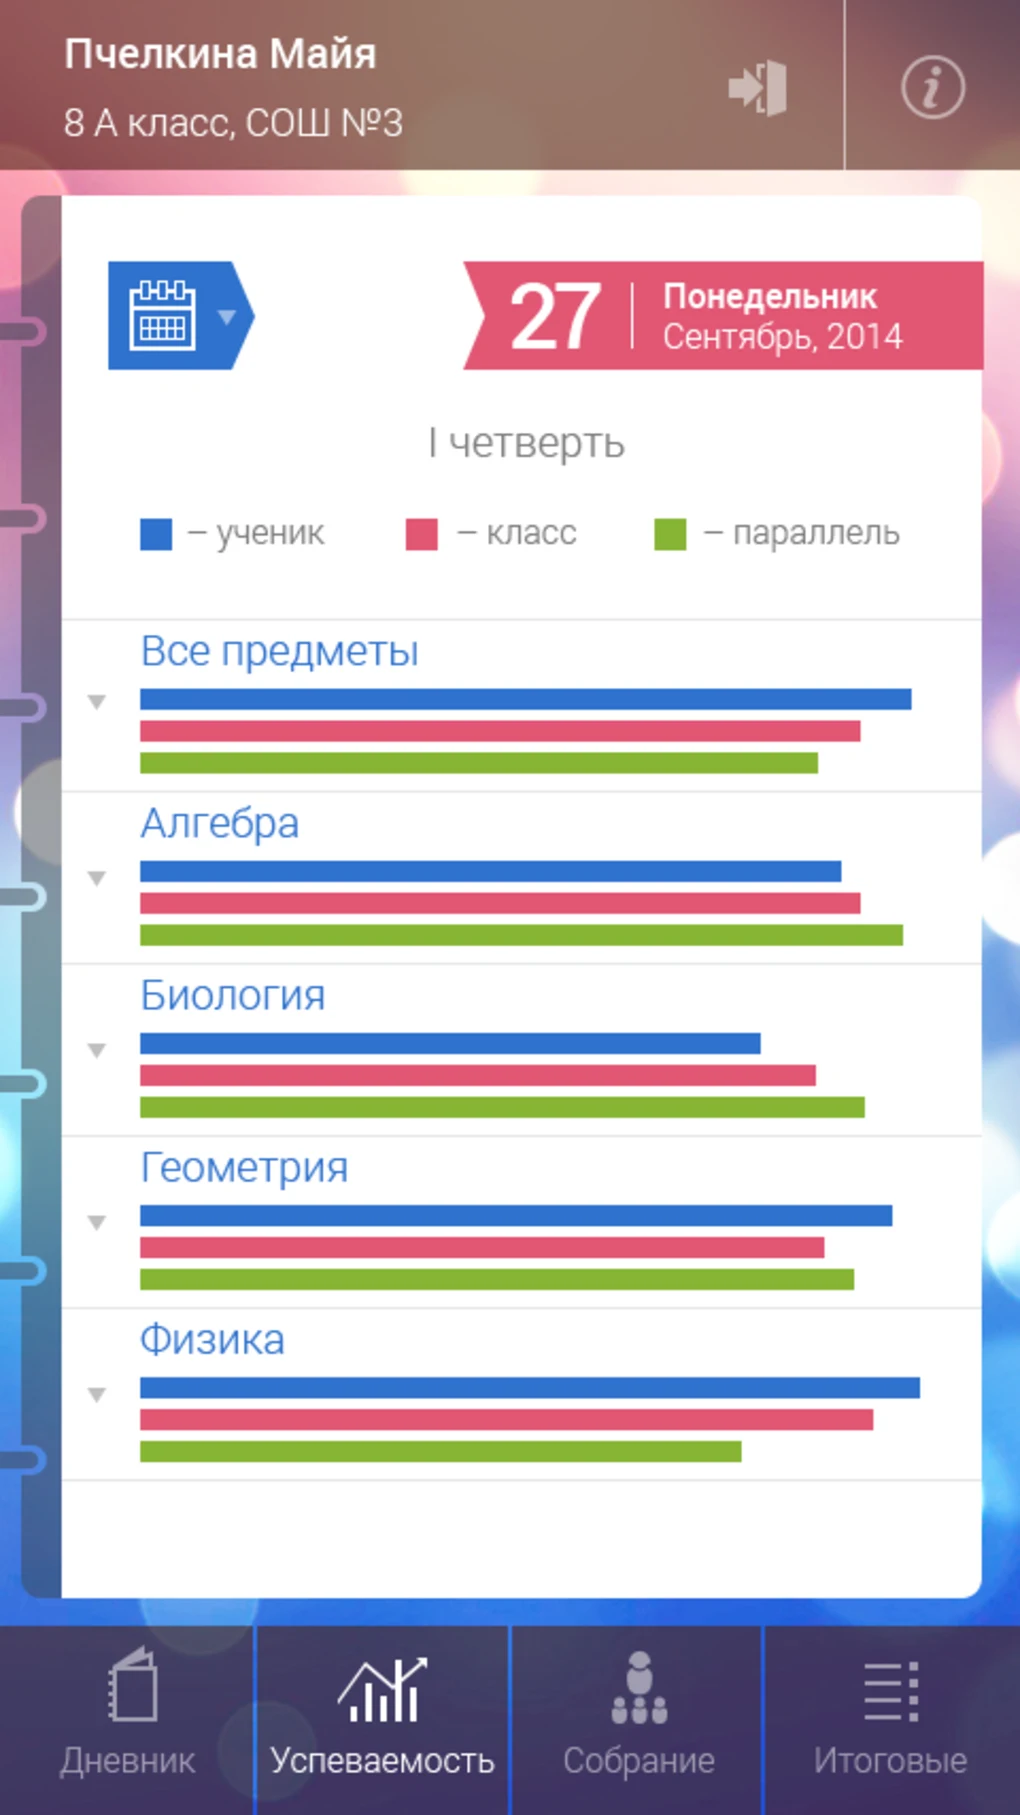 В Рязанской области работает приложение «Мой дневник» ⠀.